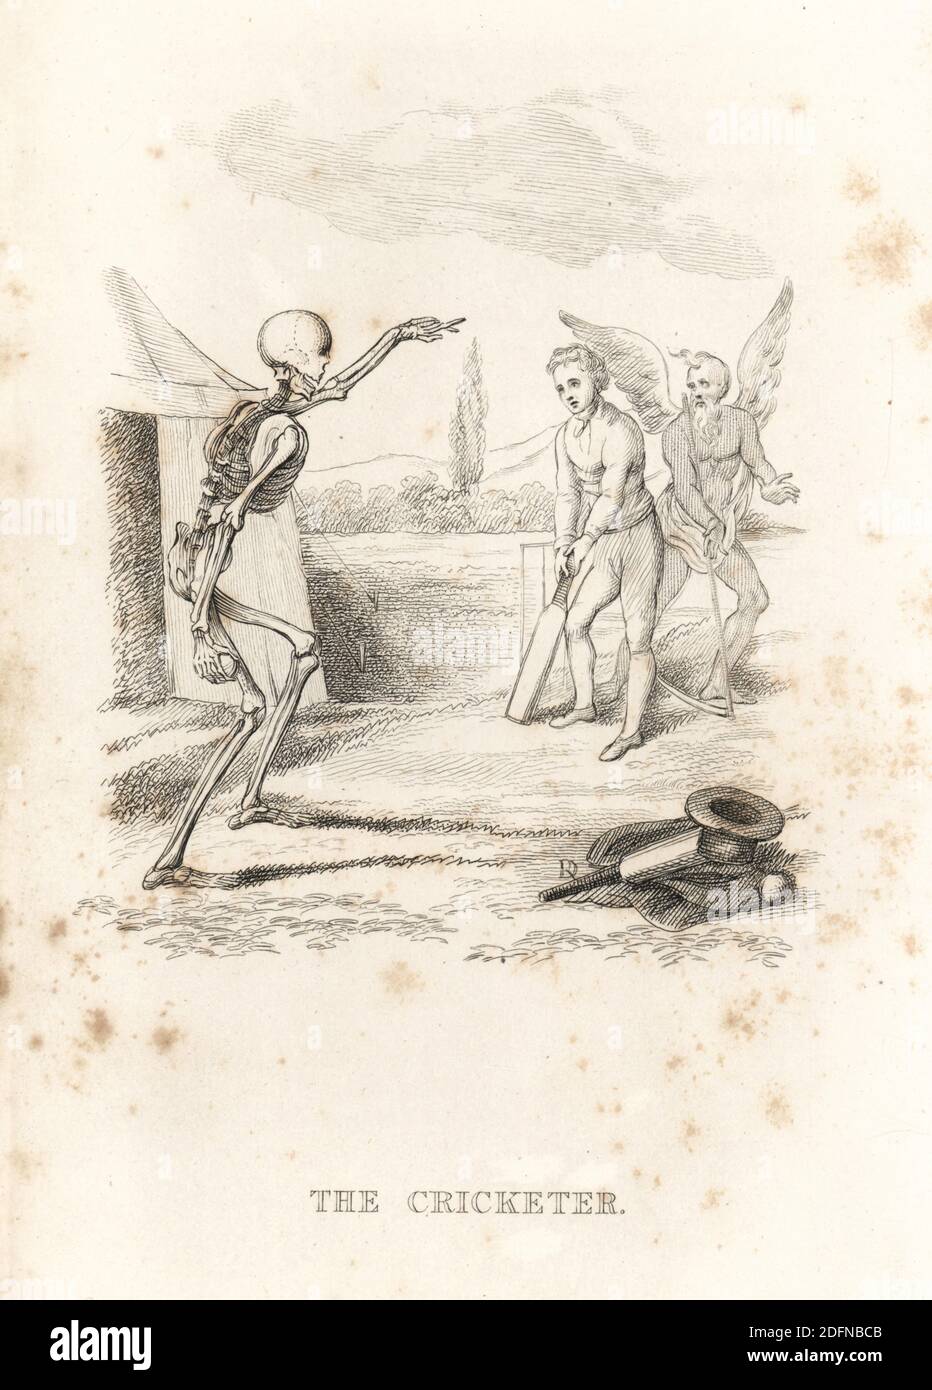 Lo scheletro della morte ciotola una palla a un picketer al pipistrello. Il guardiano del wicket è tempo del padre con la sua falce. Un cappello, cappotto, bat di cricket e palla giacciono a terra. Illustrazione disegnata ed incisa su acciaio da Richard Dagley dalle sue stesse opere di morte, composta da numerose composizioni originali in versi e prosa, J. Andrews, Londra, 1827. Dagley (1761-1841) è stato un . Foto Stock